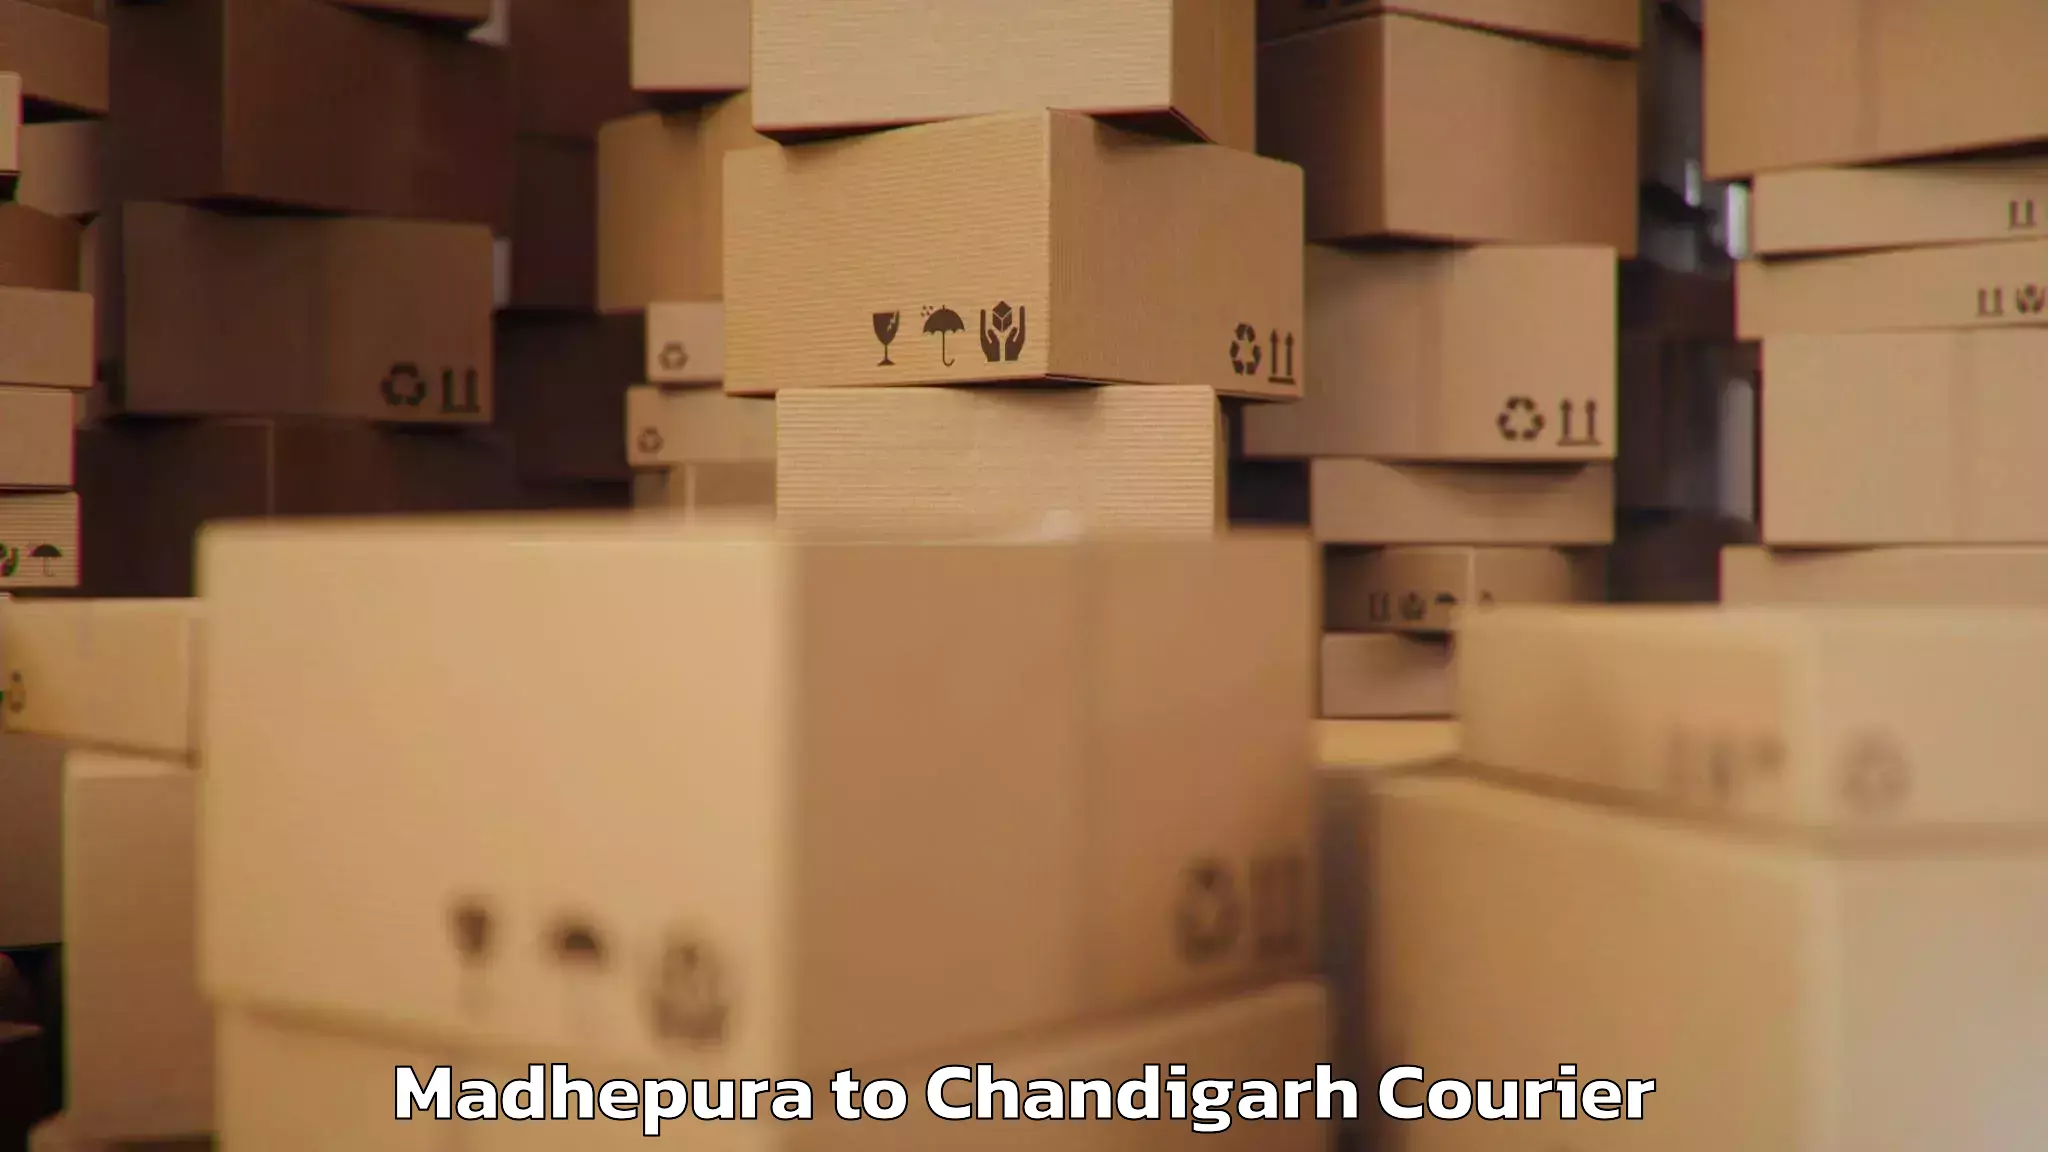 Baggage transport cost Madhepura to Chandigarh